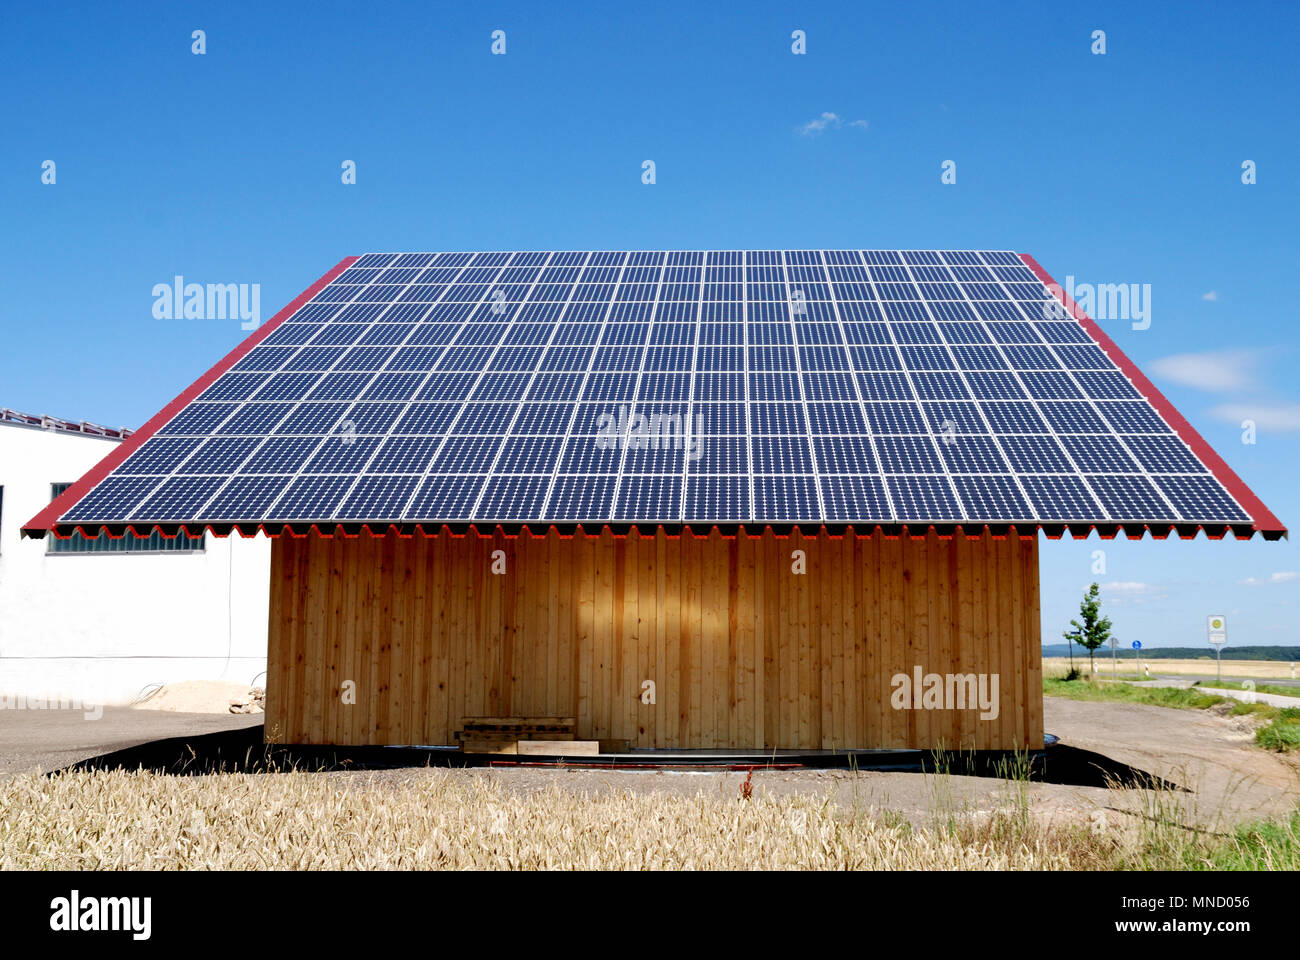 Un agricultor en Alemania está utilizando todo el techo de su granero para obtener energía para su casa con energía solar. Foto de stock